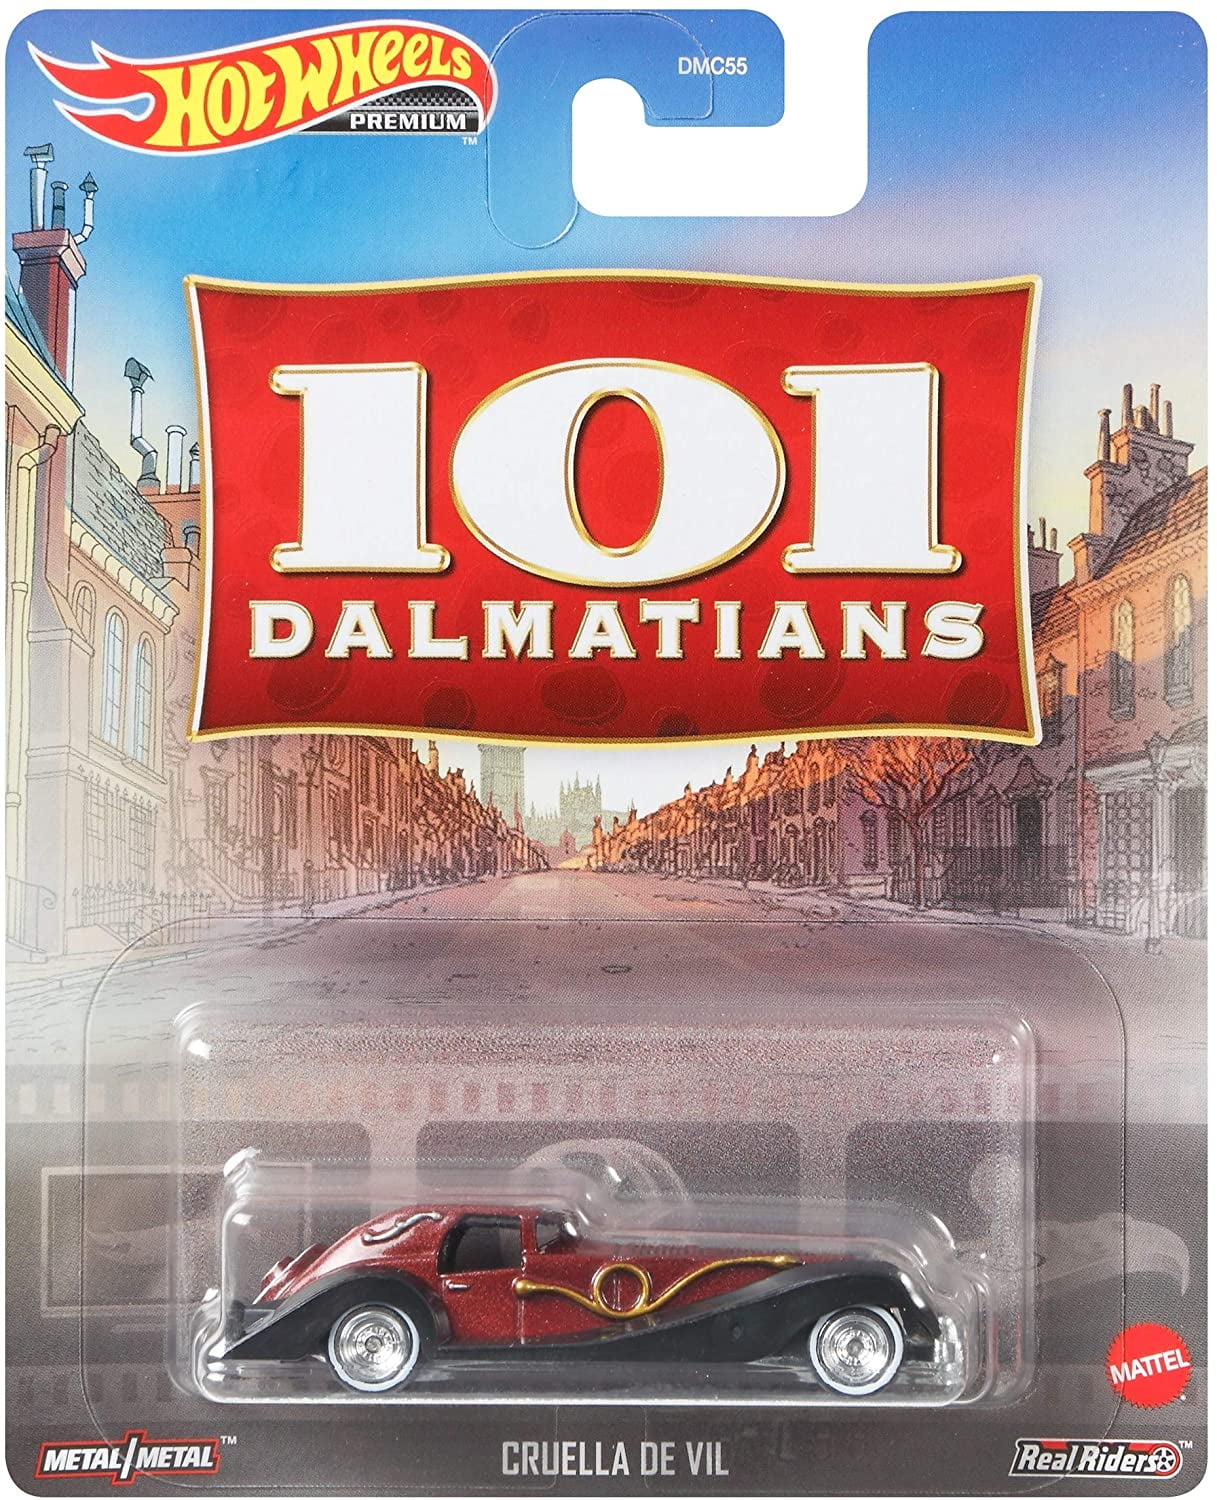 2019 Hot Wheels #127 HW Screen Time Cruella De Vil 101 Dalmatians 